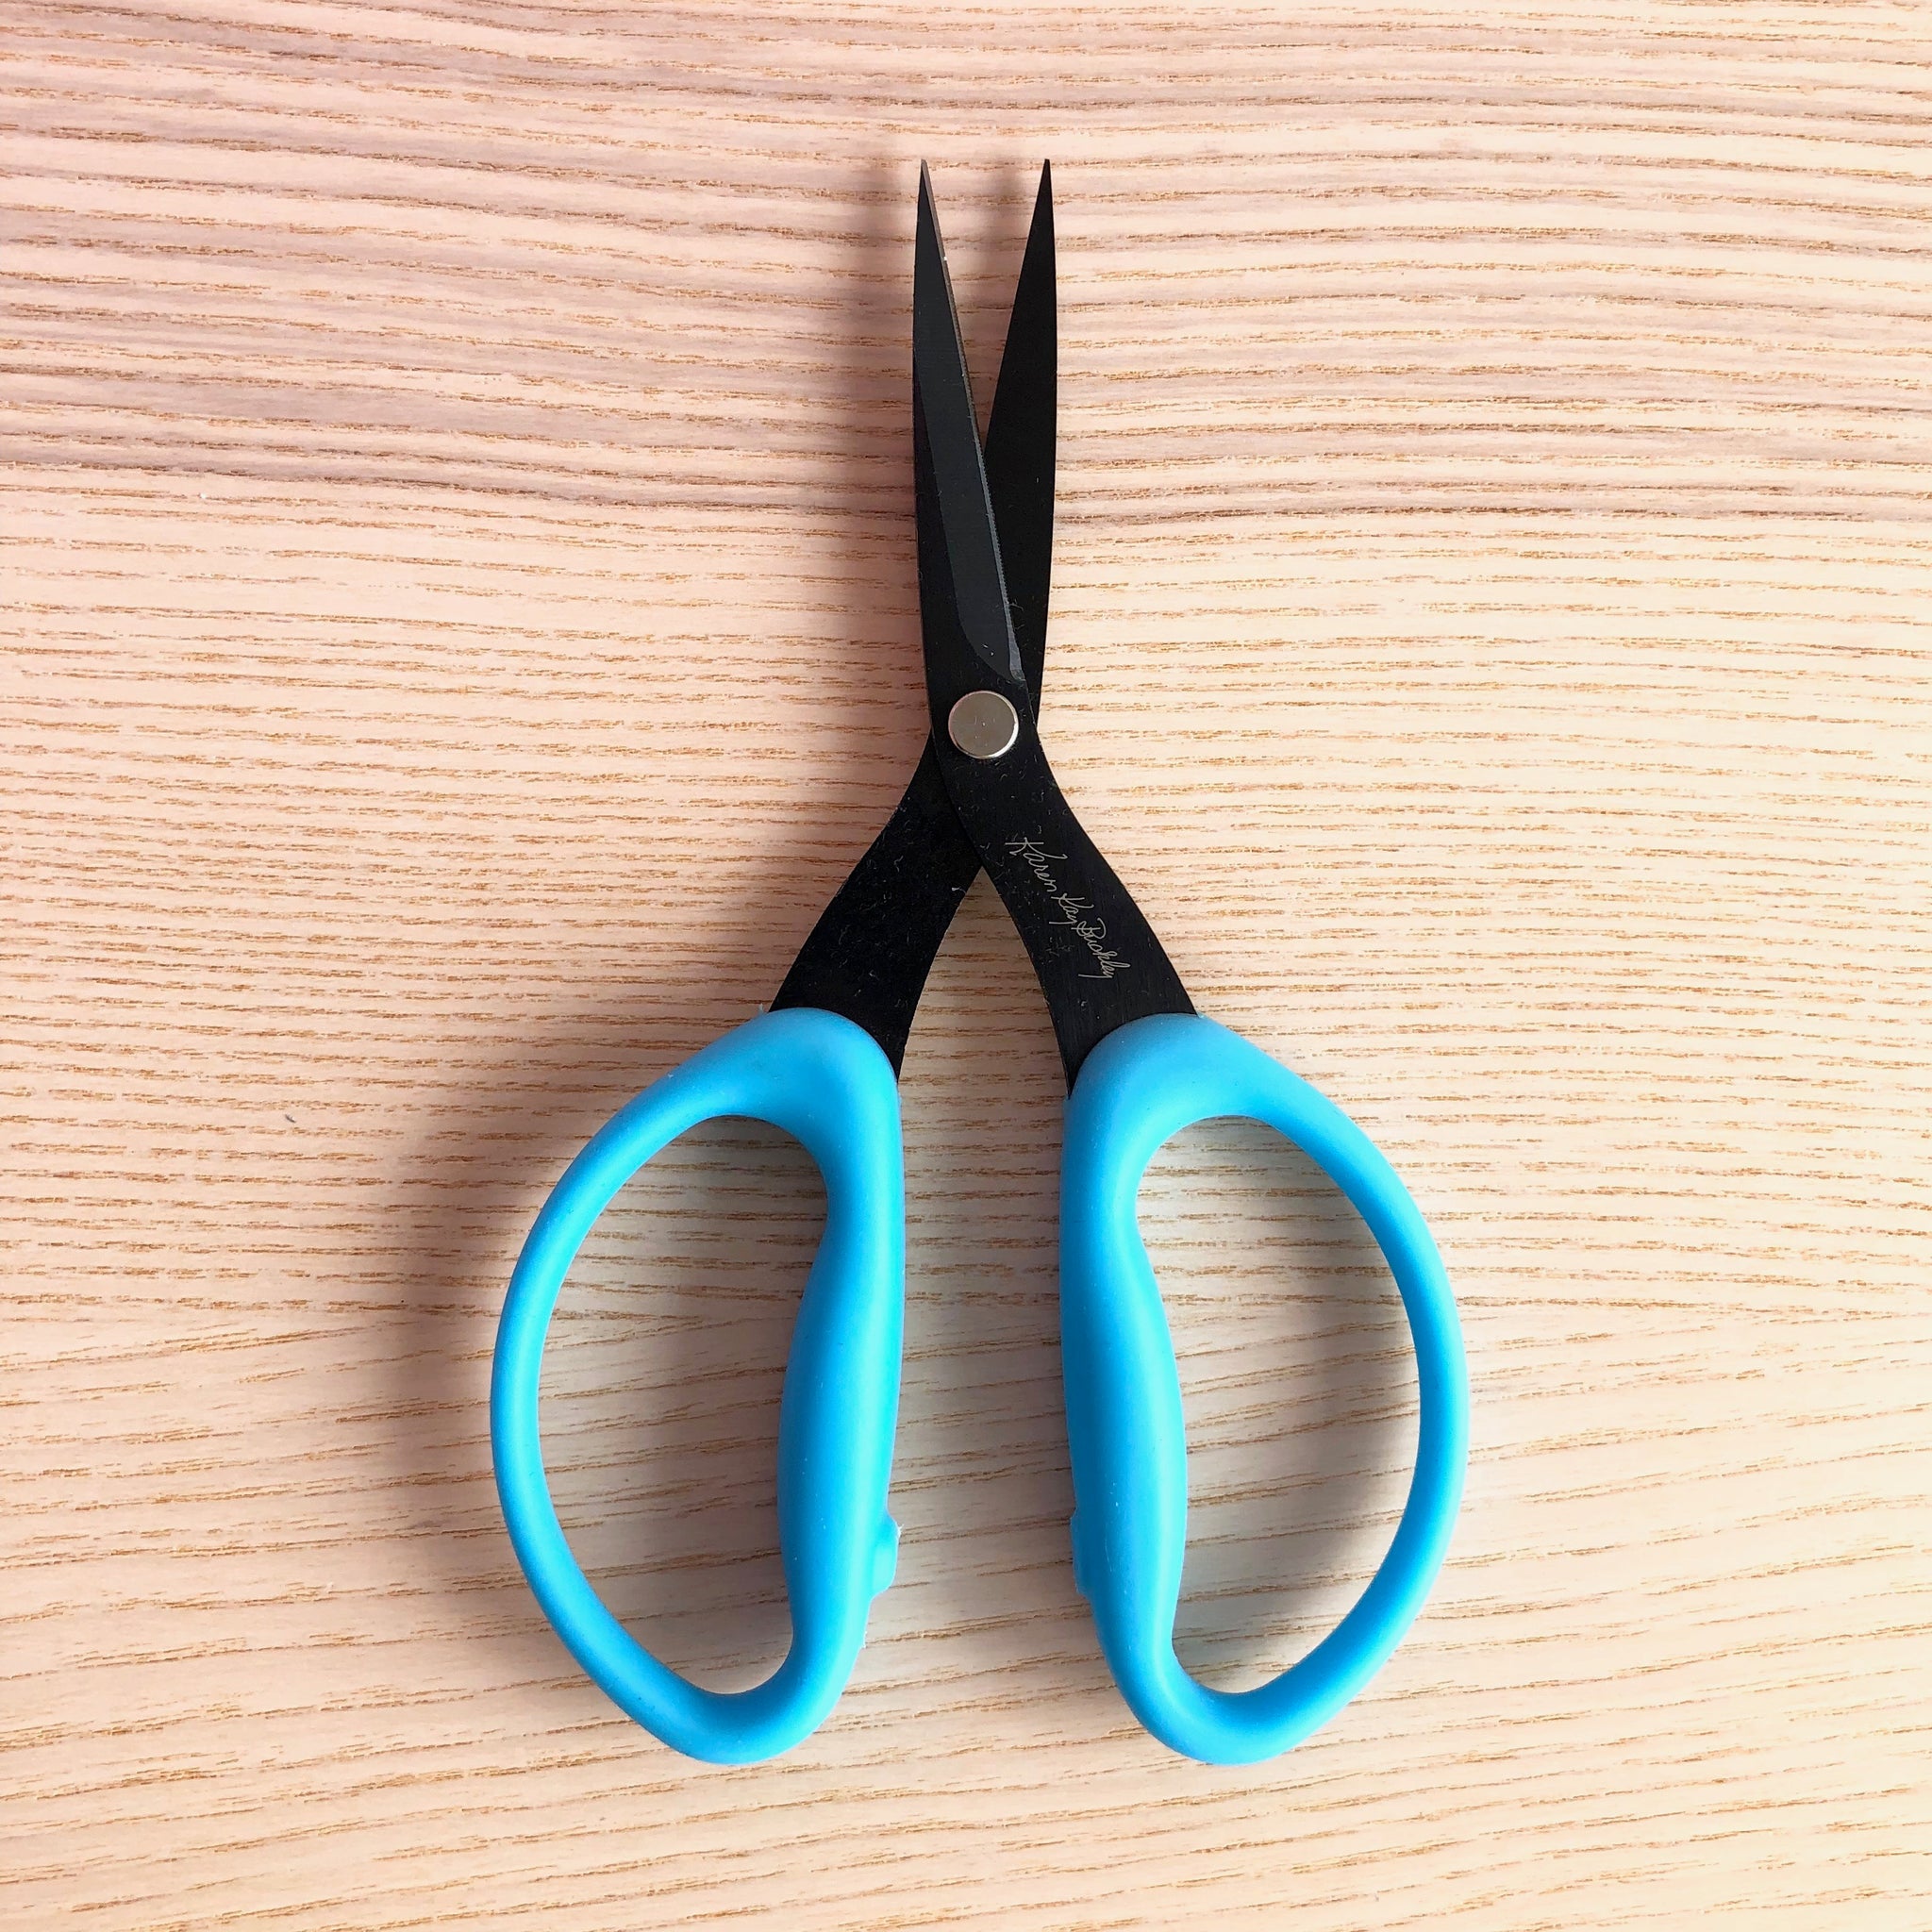 Karen Kay Buckley Perfect Scissors